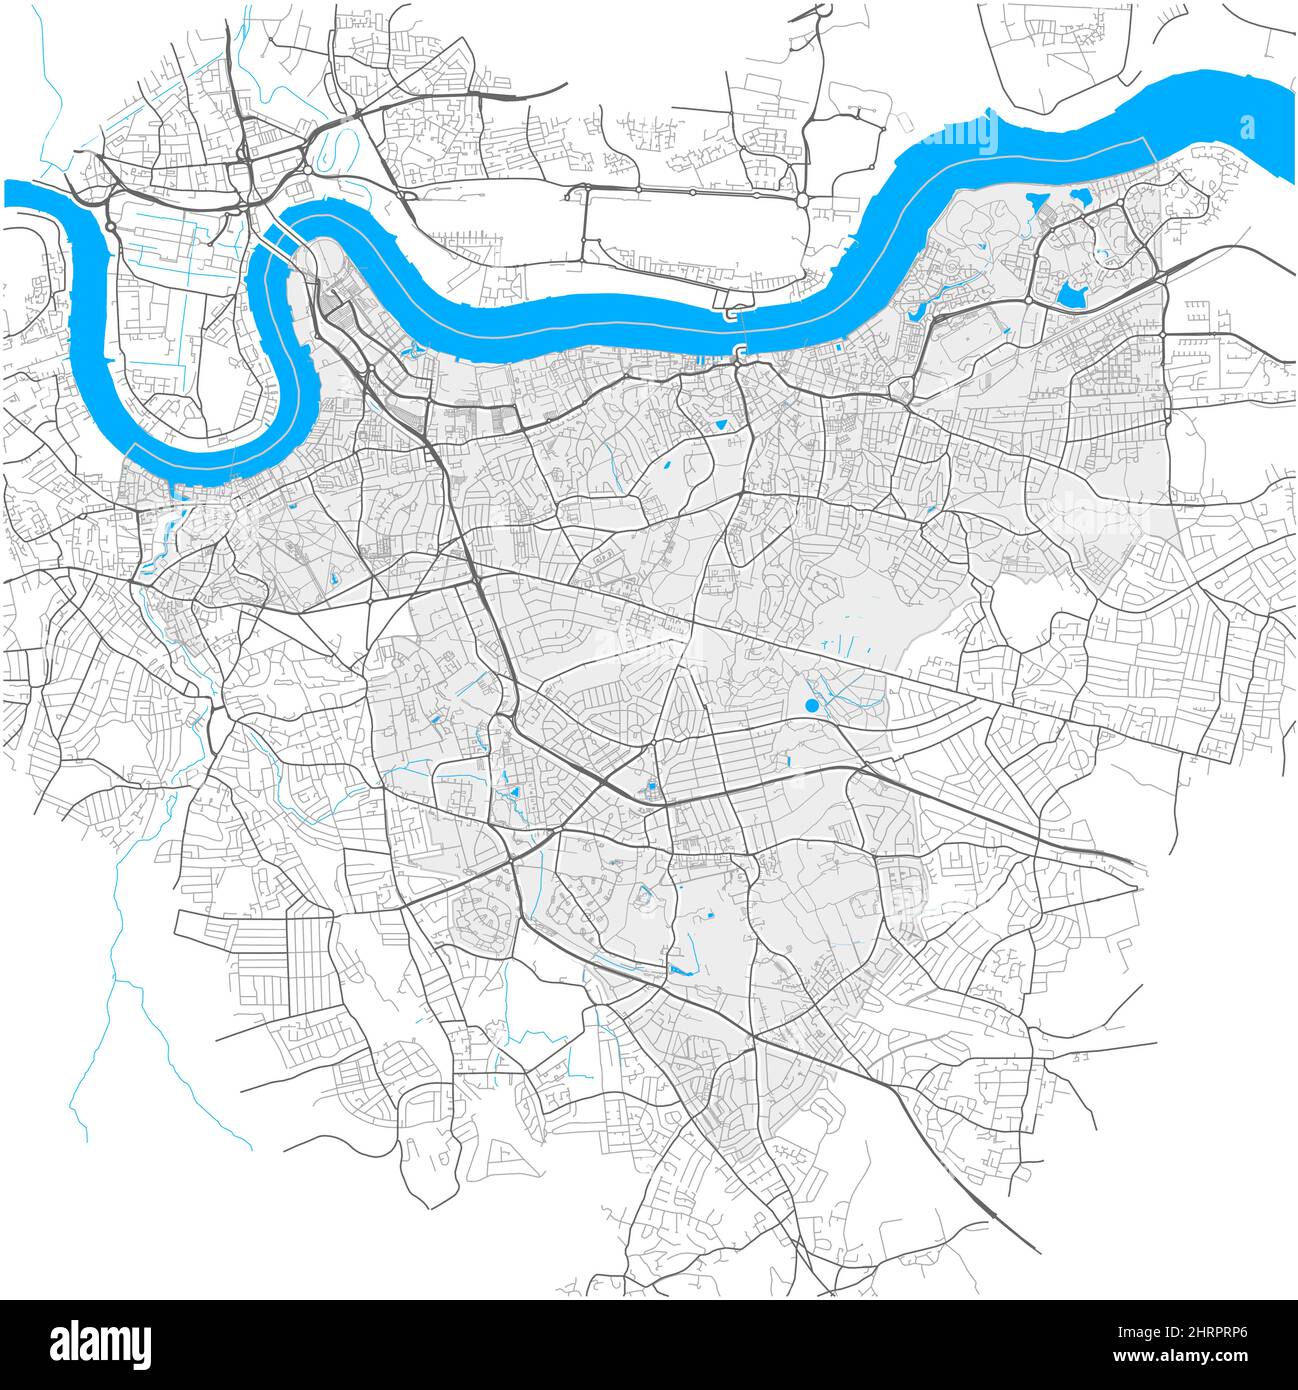 Greenwich, Greater London, Großbritannien, Vektorkarte mit hoher Detailtiefe und bearbeitbaren Pfaden. Weiße Umrisse für Hauptstraßen. Viele kleiner Stock Vektor